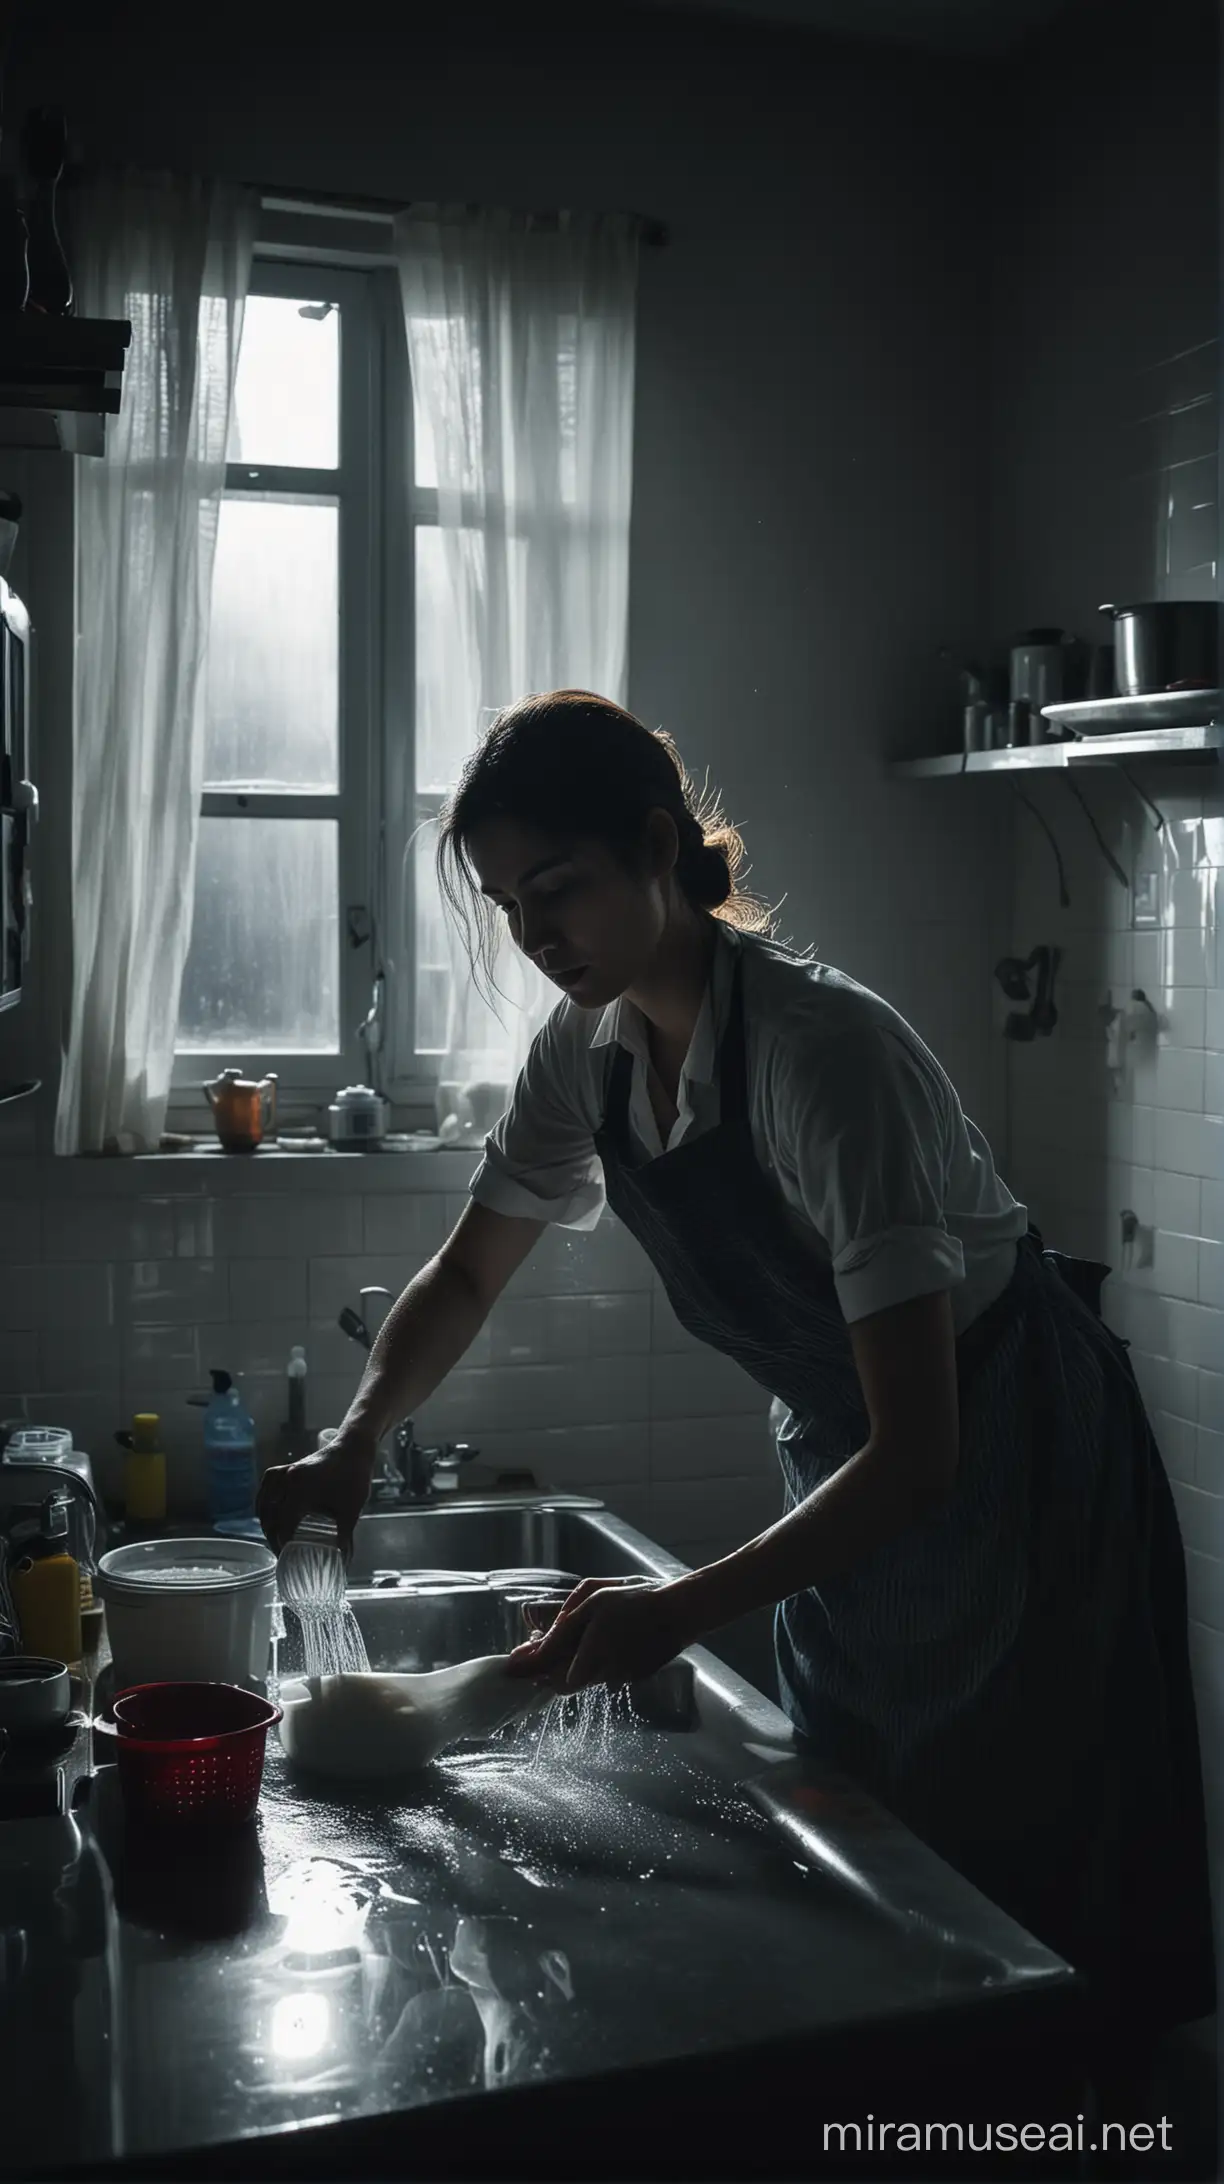 Fotografi sinematik, seorang perempuan usia 30 tahun bekerja sebagai pembantu rumah tangga, dia sedang mencuci piring. Suasana kelam,penuh mengharukan, sinematik 